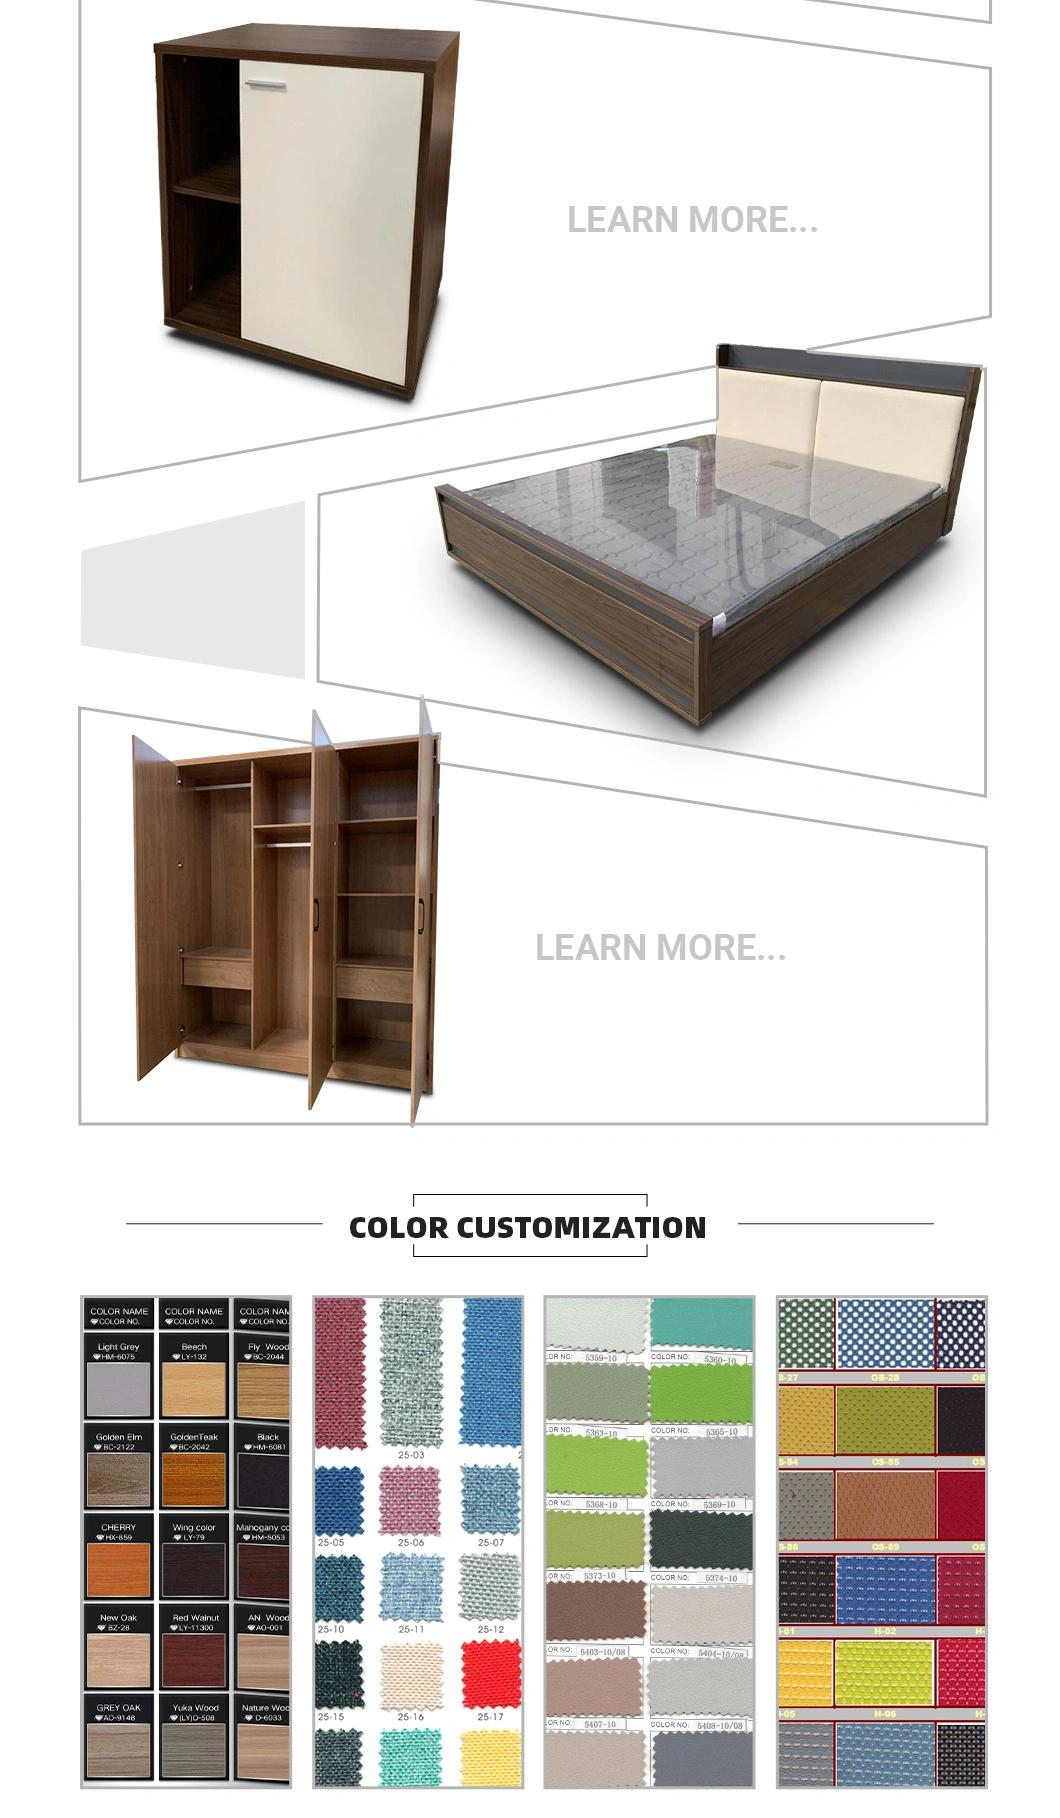 Creative Mixed Color Simple Design Sliding Door Children Kid Bedroom Furniture Wooden Wardrobe